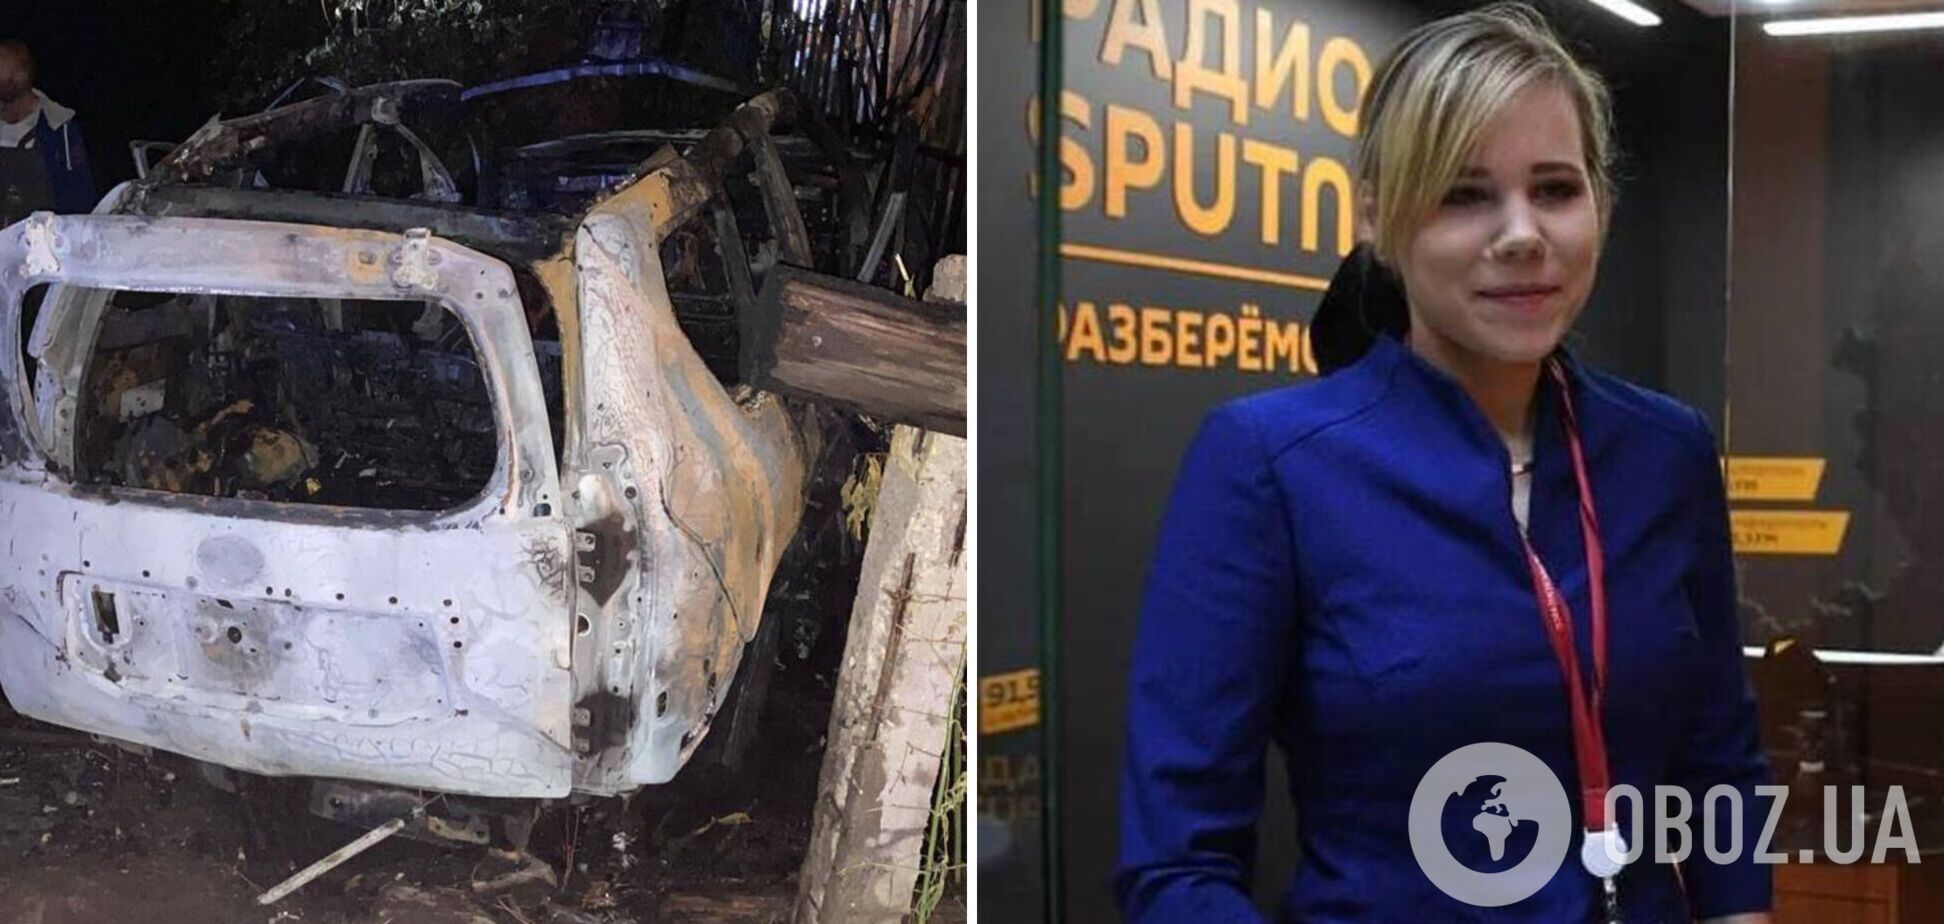 В Подмосковье взорвали авто дочери главного идеолога 'русского мира' Дугина. Фото и видео